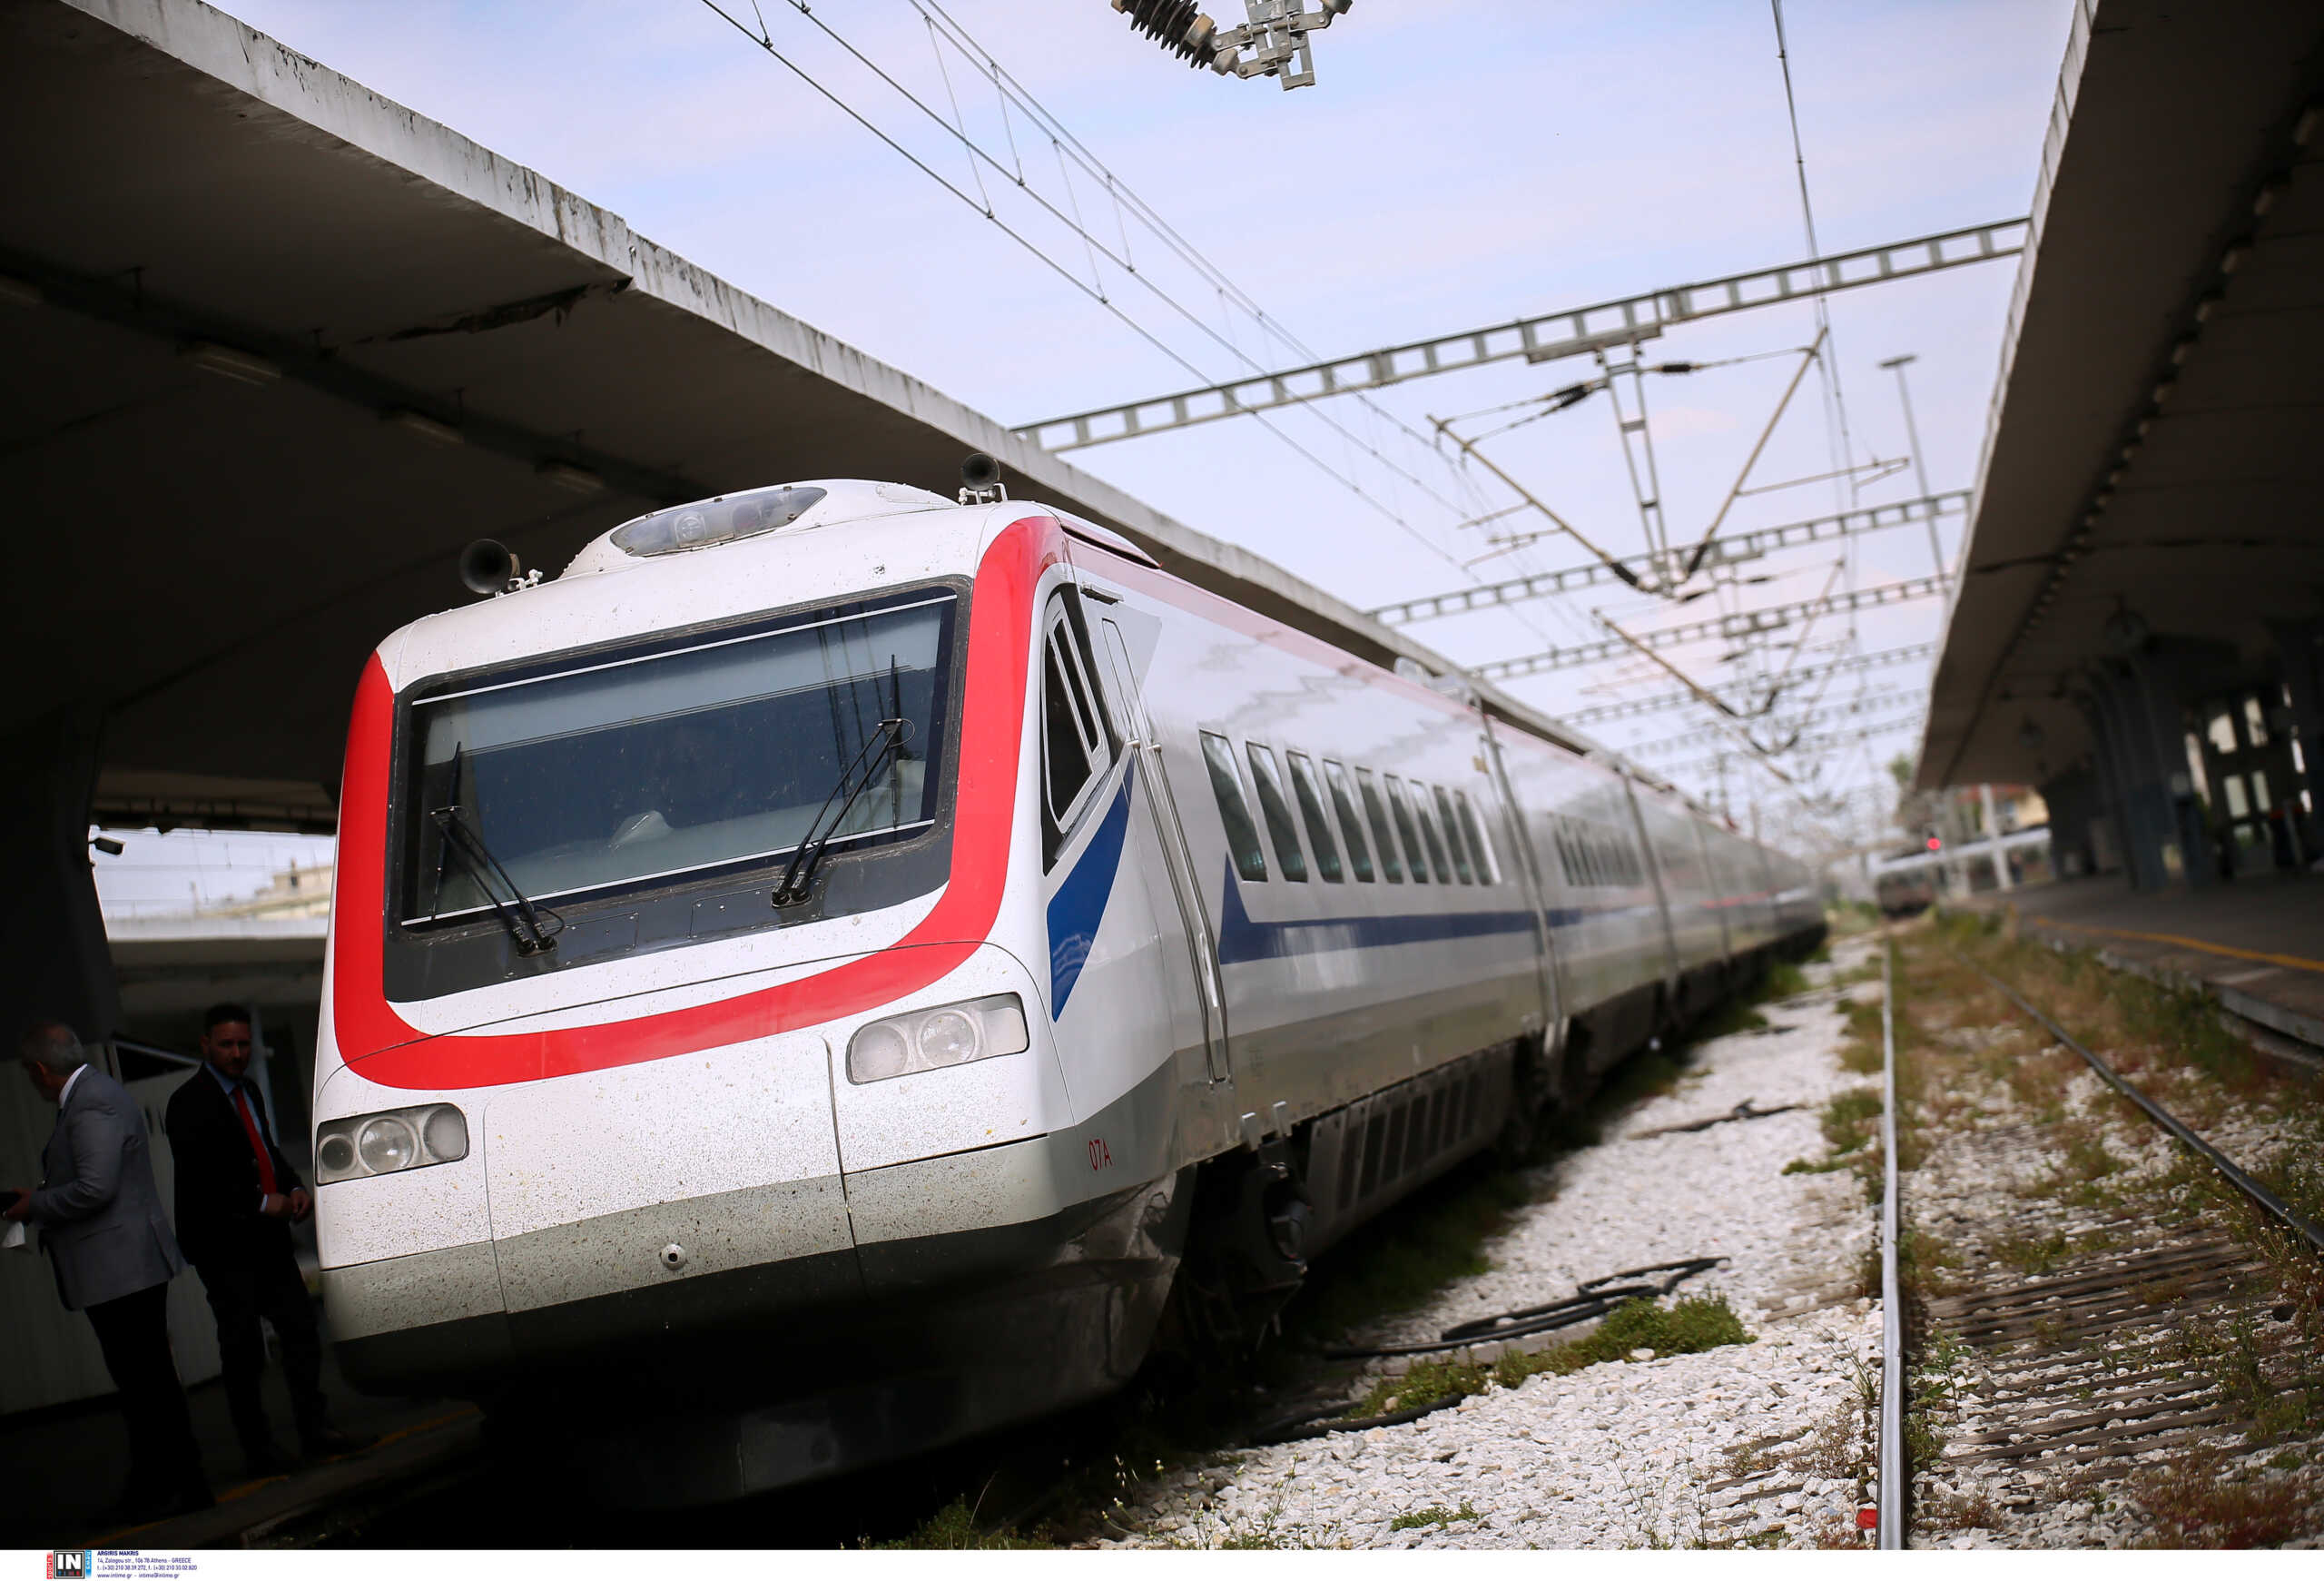 Αποκαταστάθηκε η κυκλοφορία στη σιδηροδρομική γραμμή Θεσσαλονίκη – Αθήνα